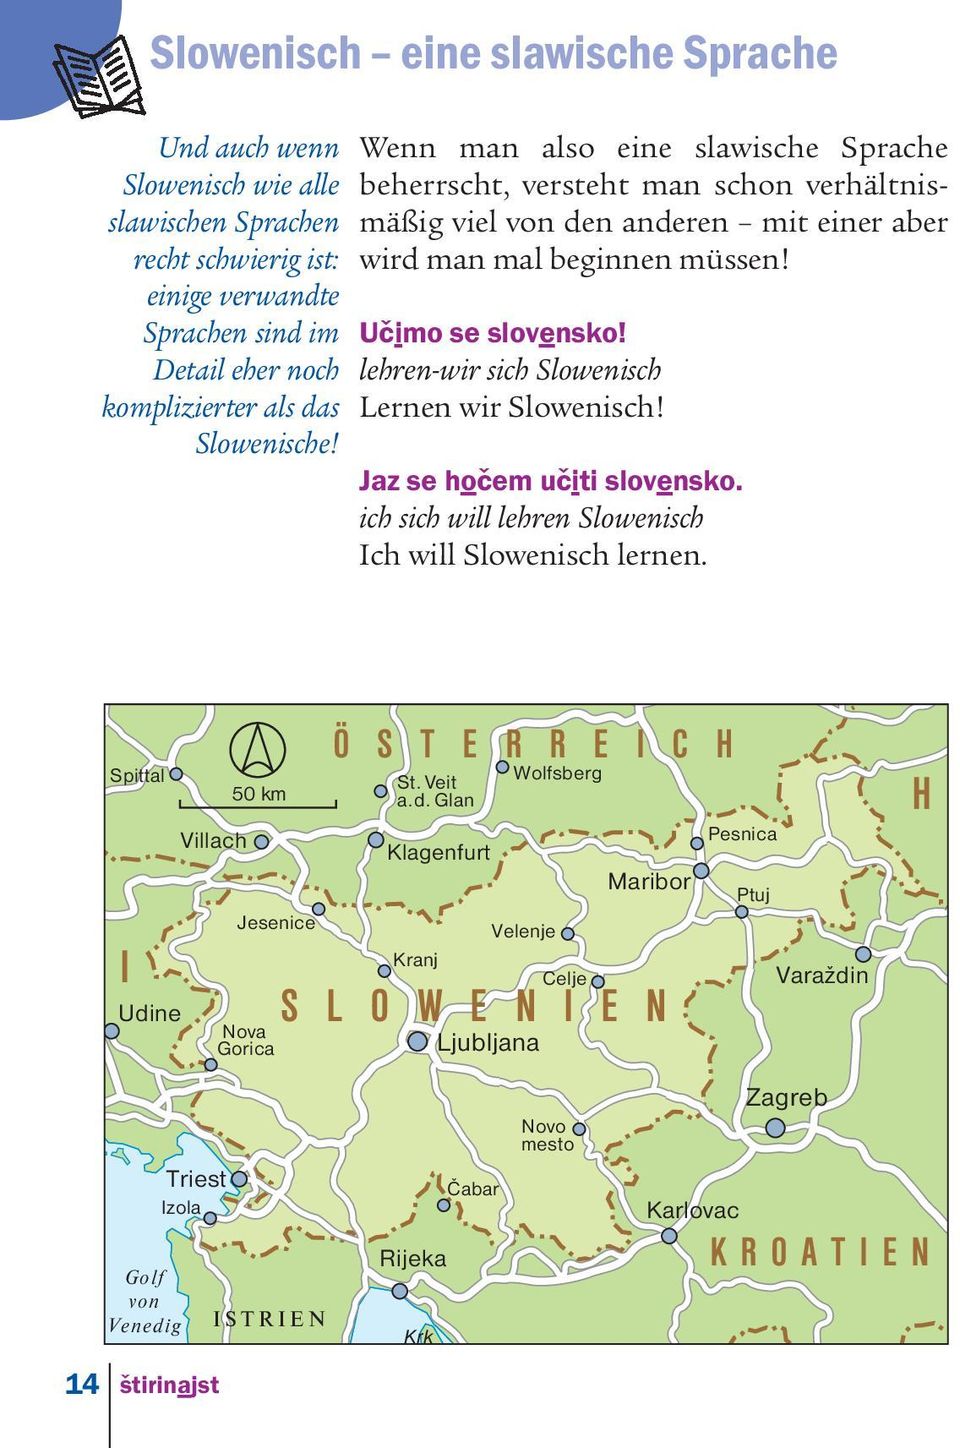 lehren-wir sich Slowenisch Lernen wir Slowenisch! Jaz se hoc em uc iti slovensko. ich sich will lehren Slowenisch Ich will Slowenisch lernen.